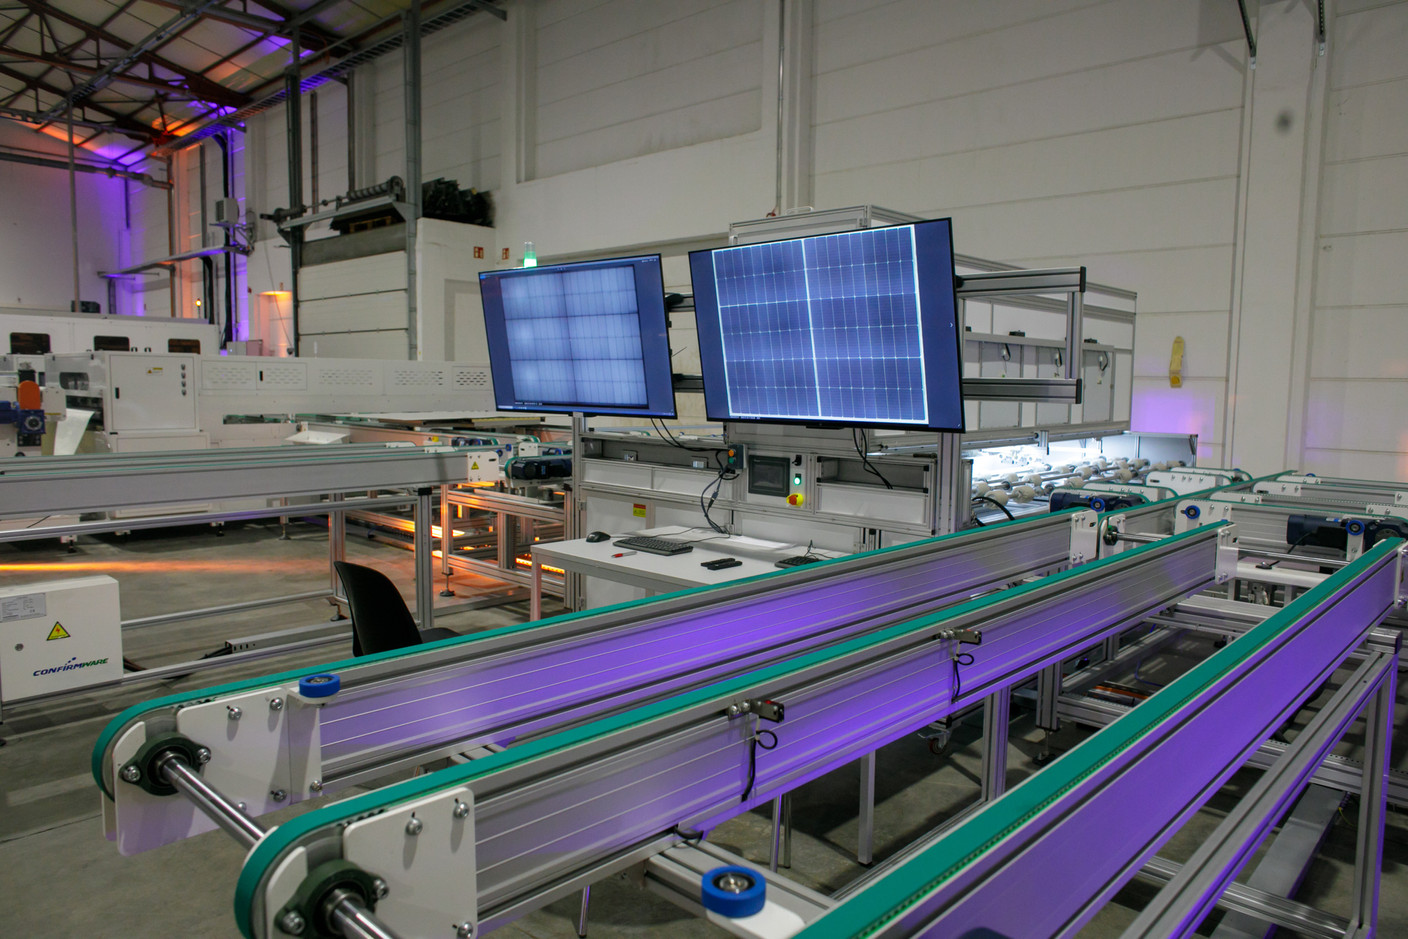 L’ambition de Solarcells est de titiller les fabricants asiatiques sur le territoire luxembourgeois. (Photo: Matic Zorman/Maison Moderne)